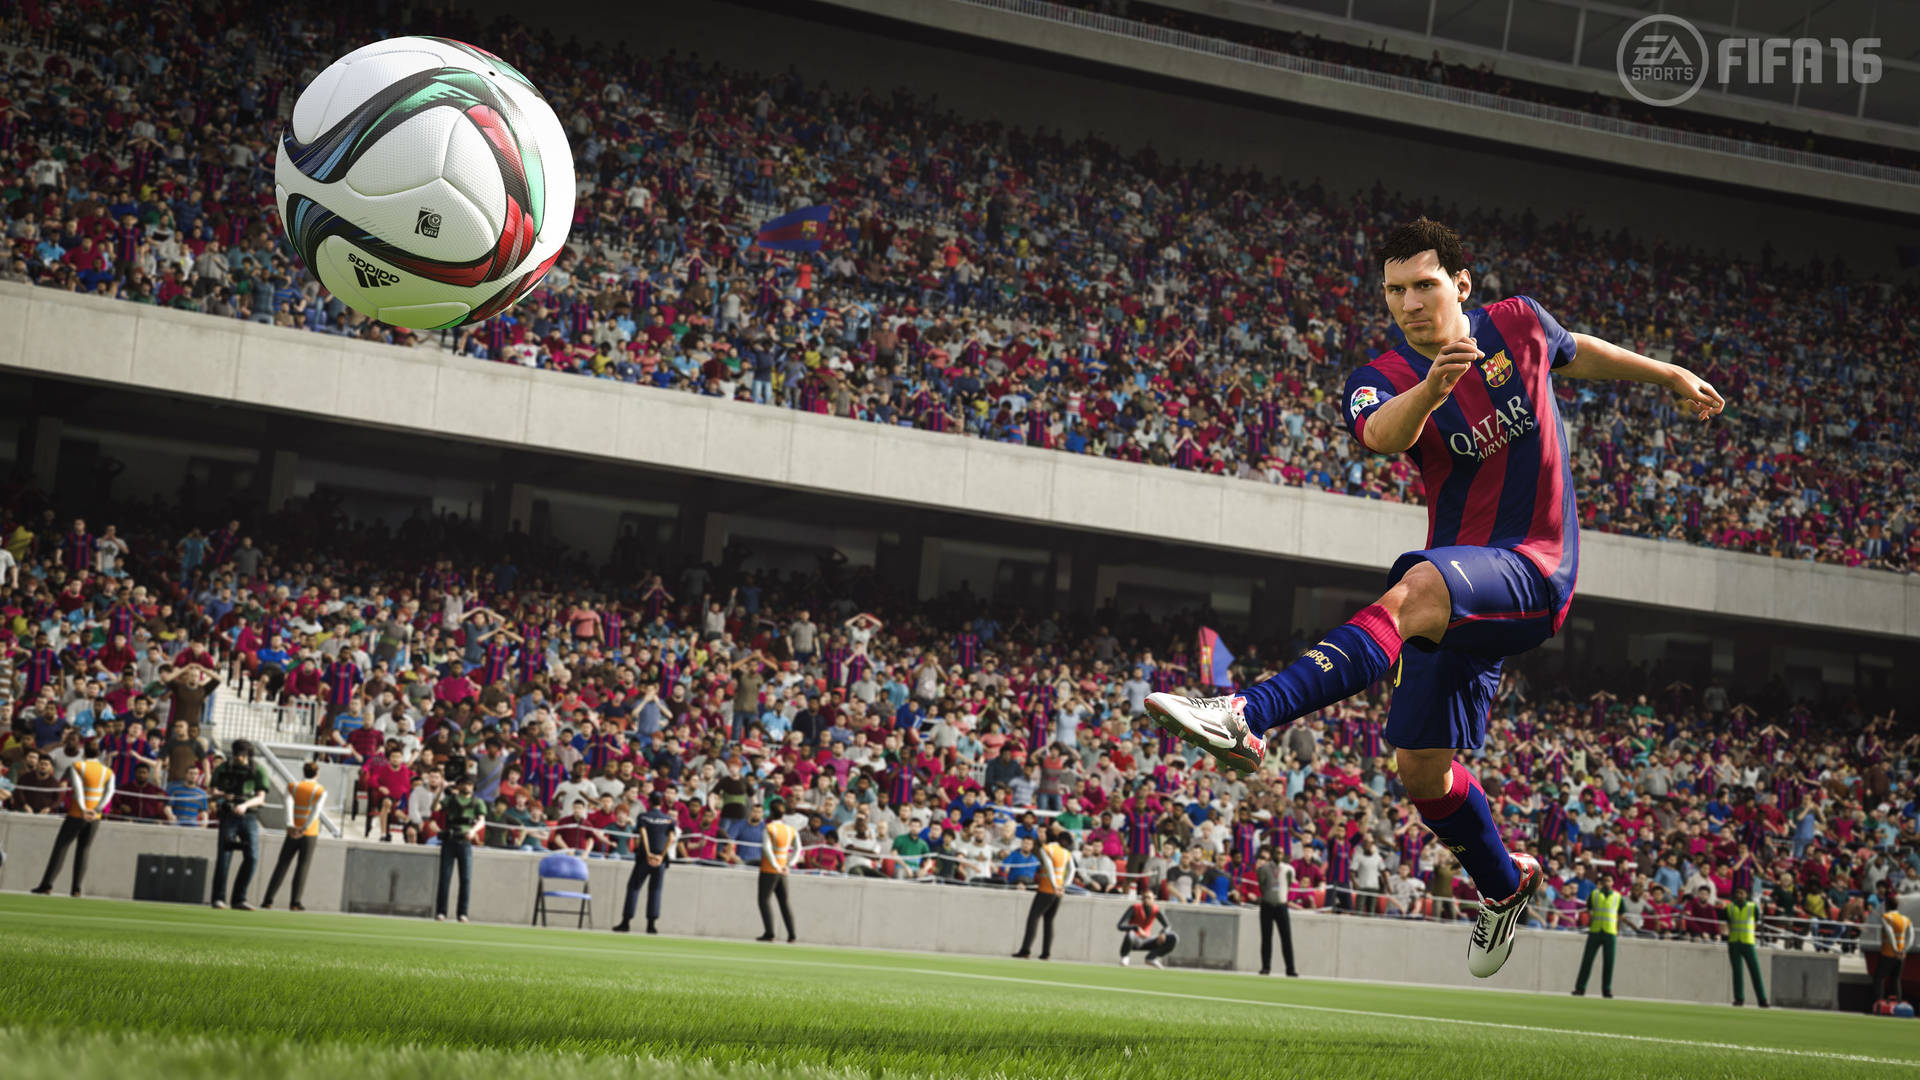 Fifa 16 Messi 4k Ultra Hd